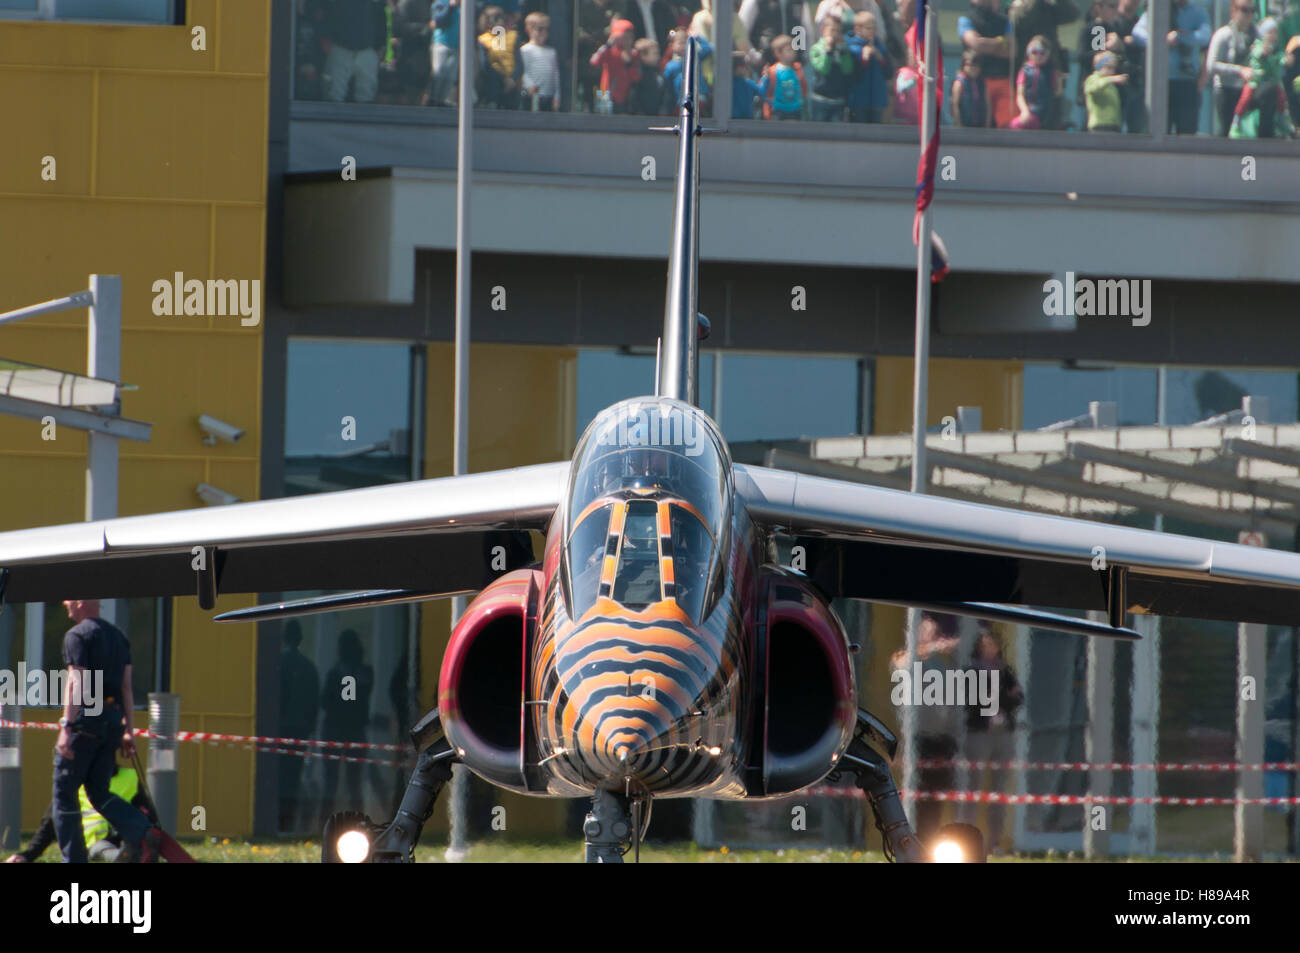 Maribor, Slovénie - 16 Avril 2016 : Red Bull's Alpha Jet dans le cadre de l'équipe de Flying Bulls sur l'affichage Banque D'Images